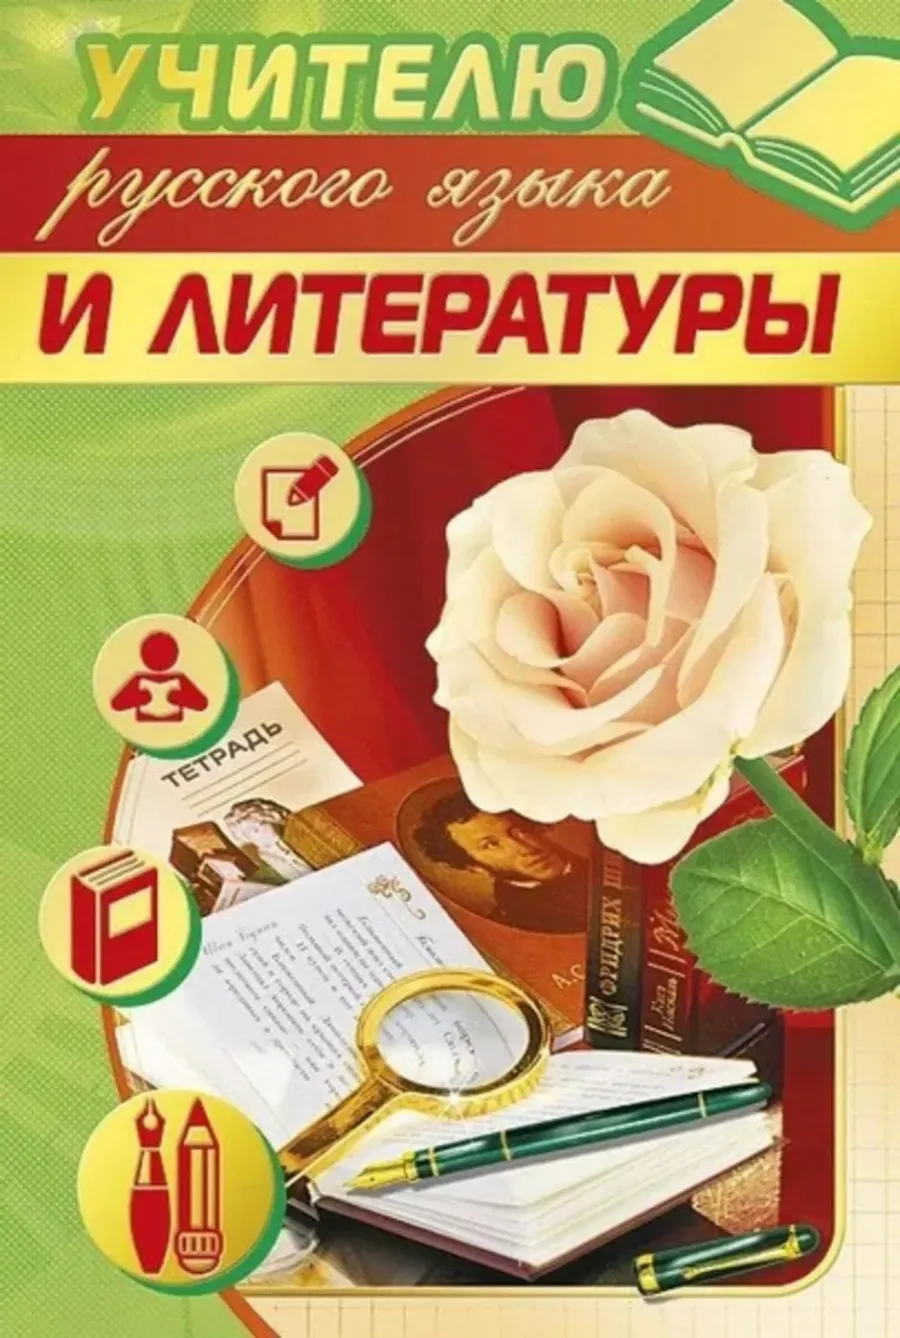 Открытка учителю русского языка и литературы